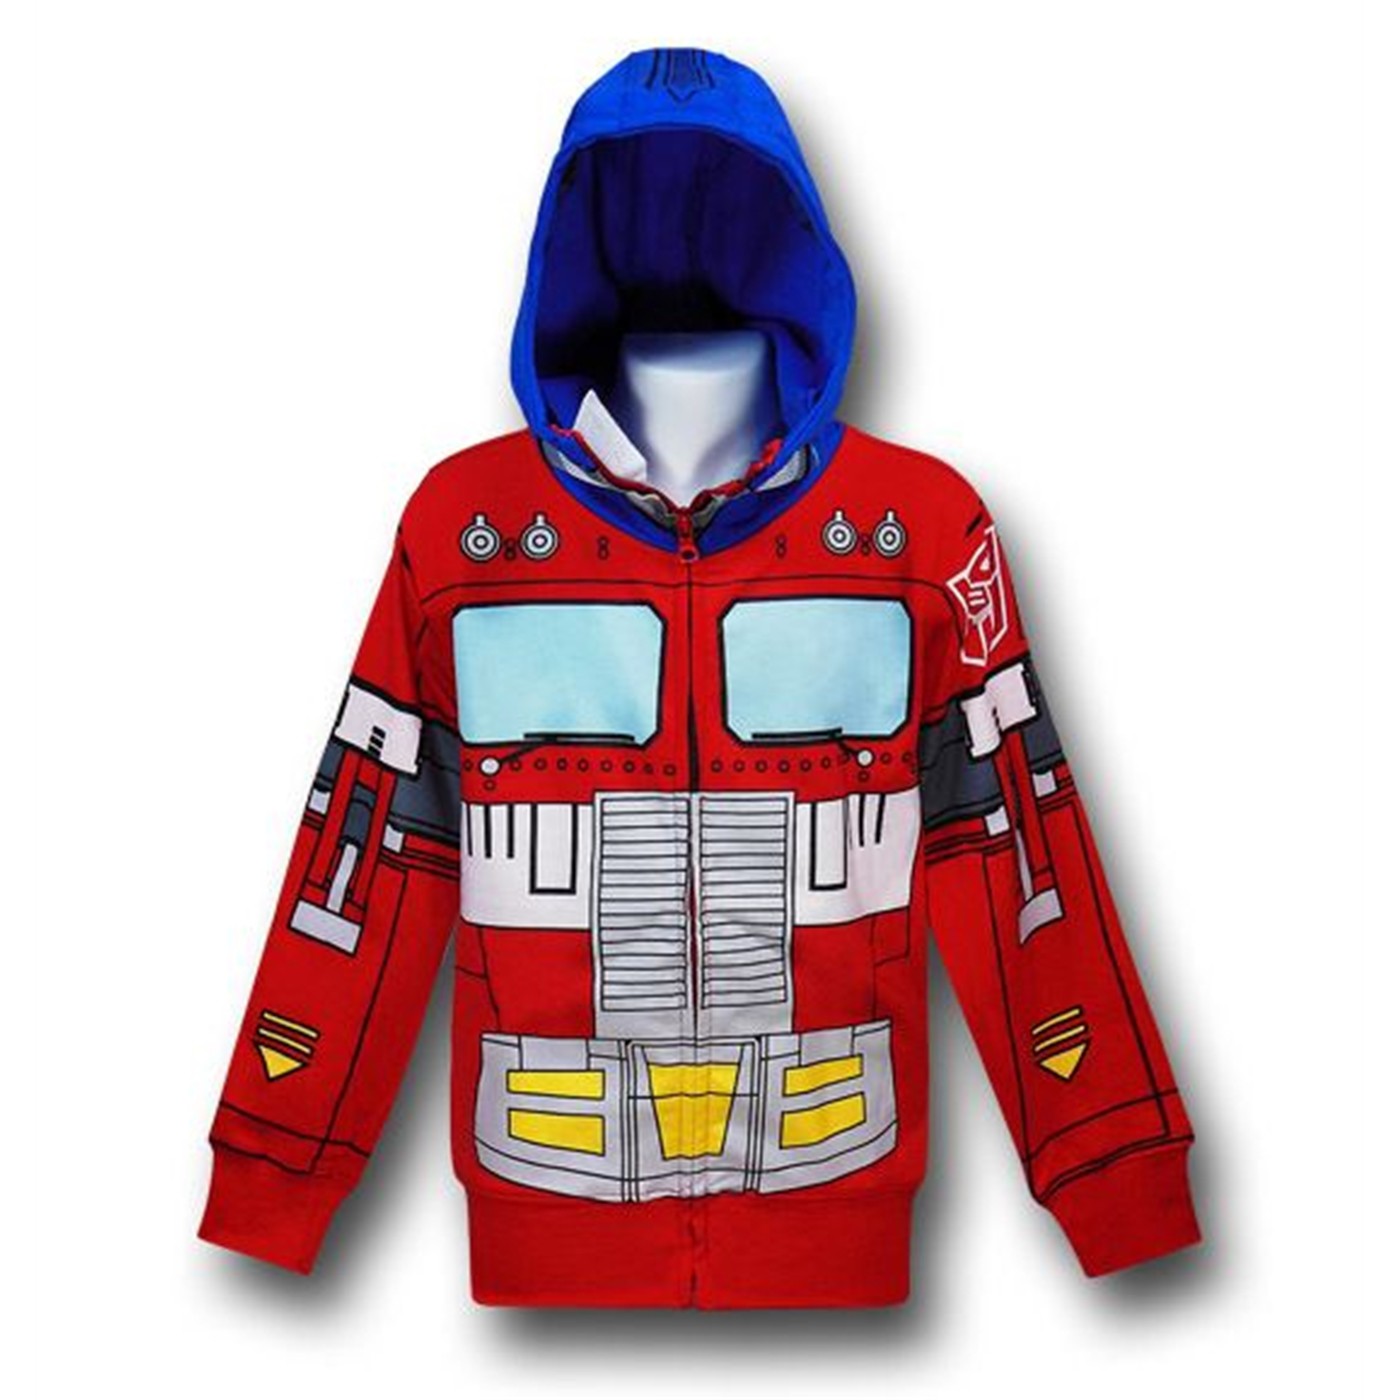 Transformers Optimus Prime Kids Costume Hoodie